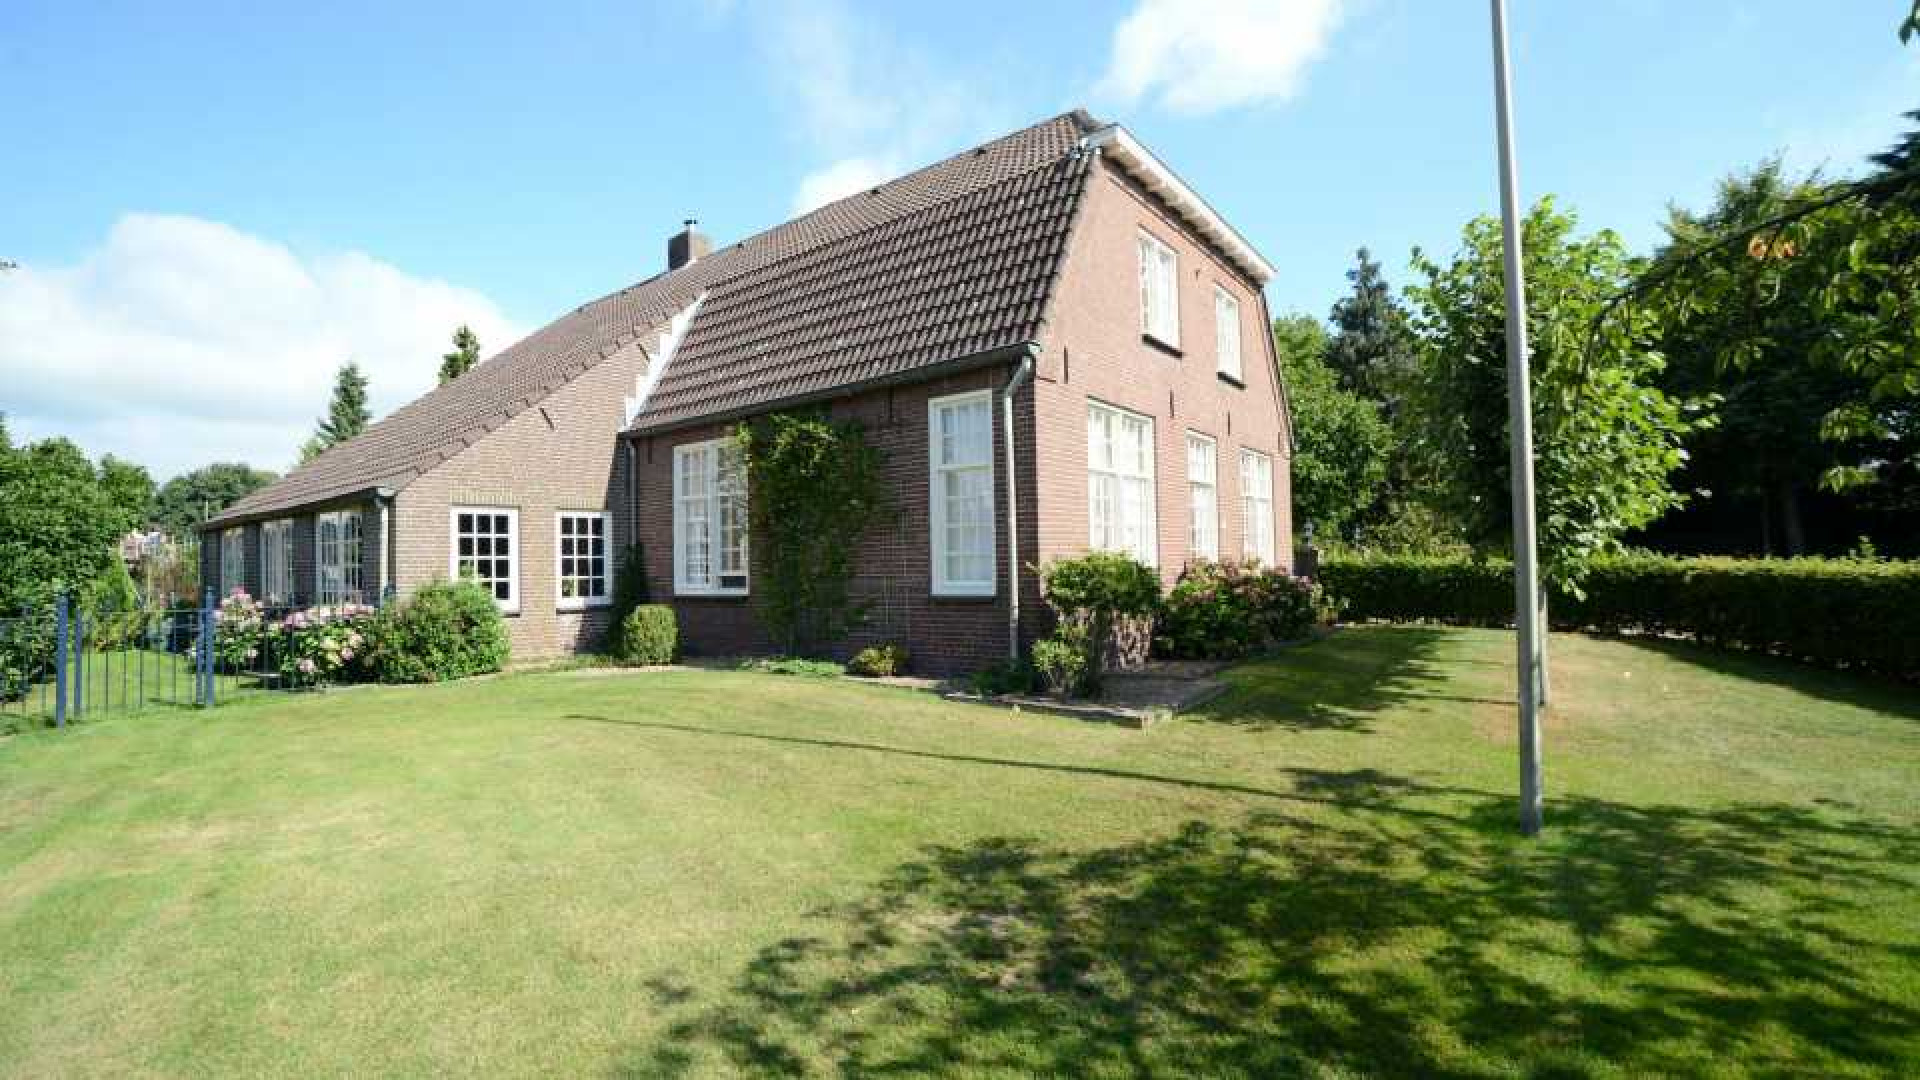 Michael van Gerwen huurt luxe woonboerderij. Zie foto's 1